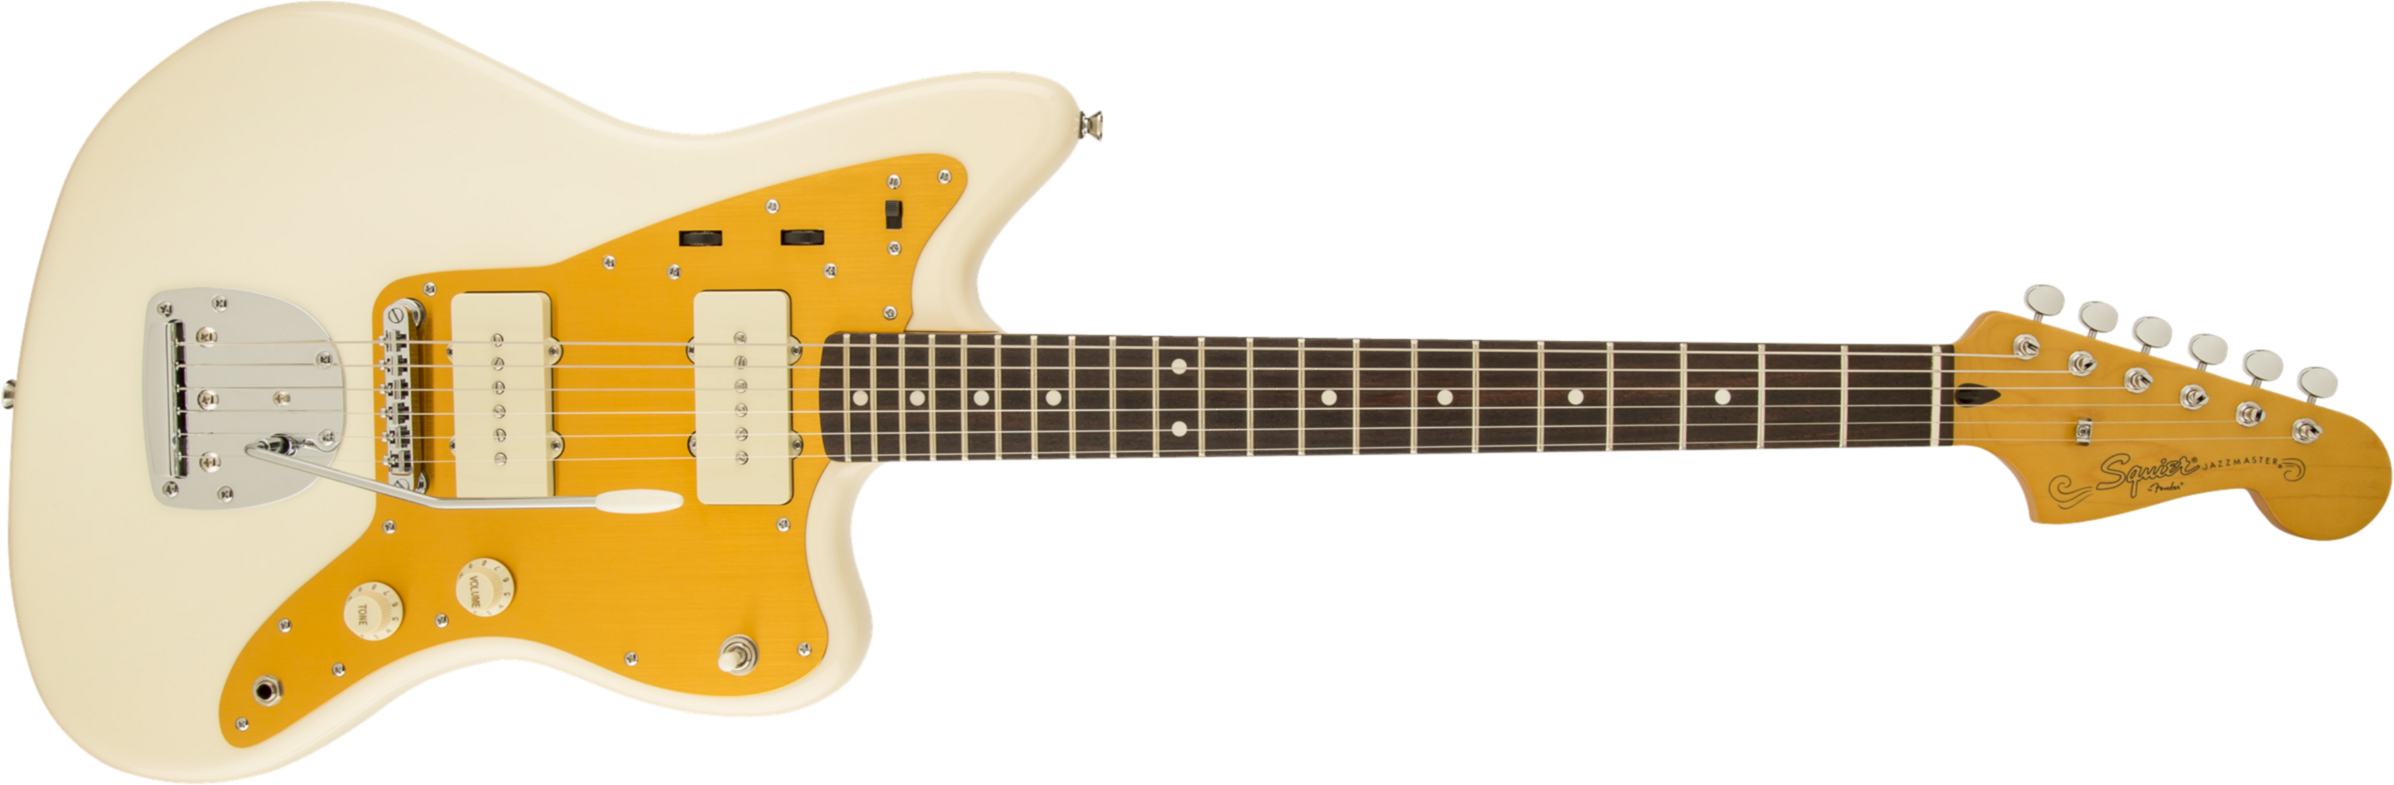 Squier Jazzmaster J Mascis (lau) - Vintage White - Retro-rock elektrische gitaar - Main picture